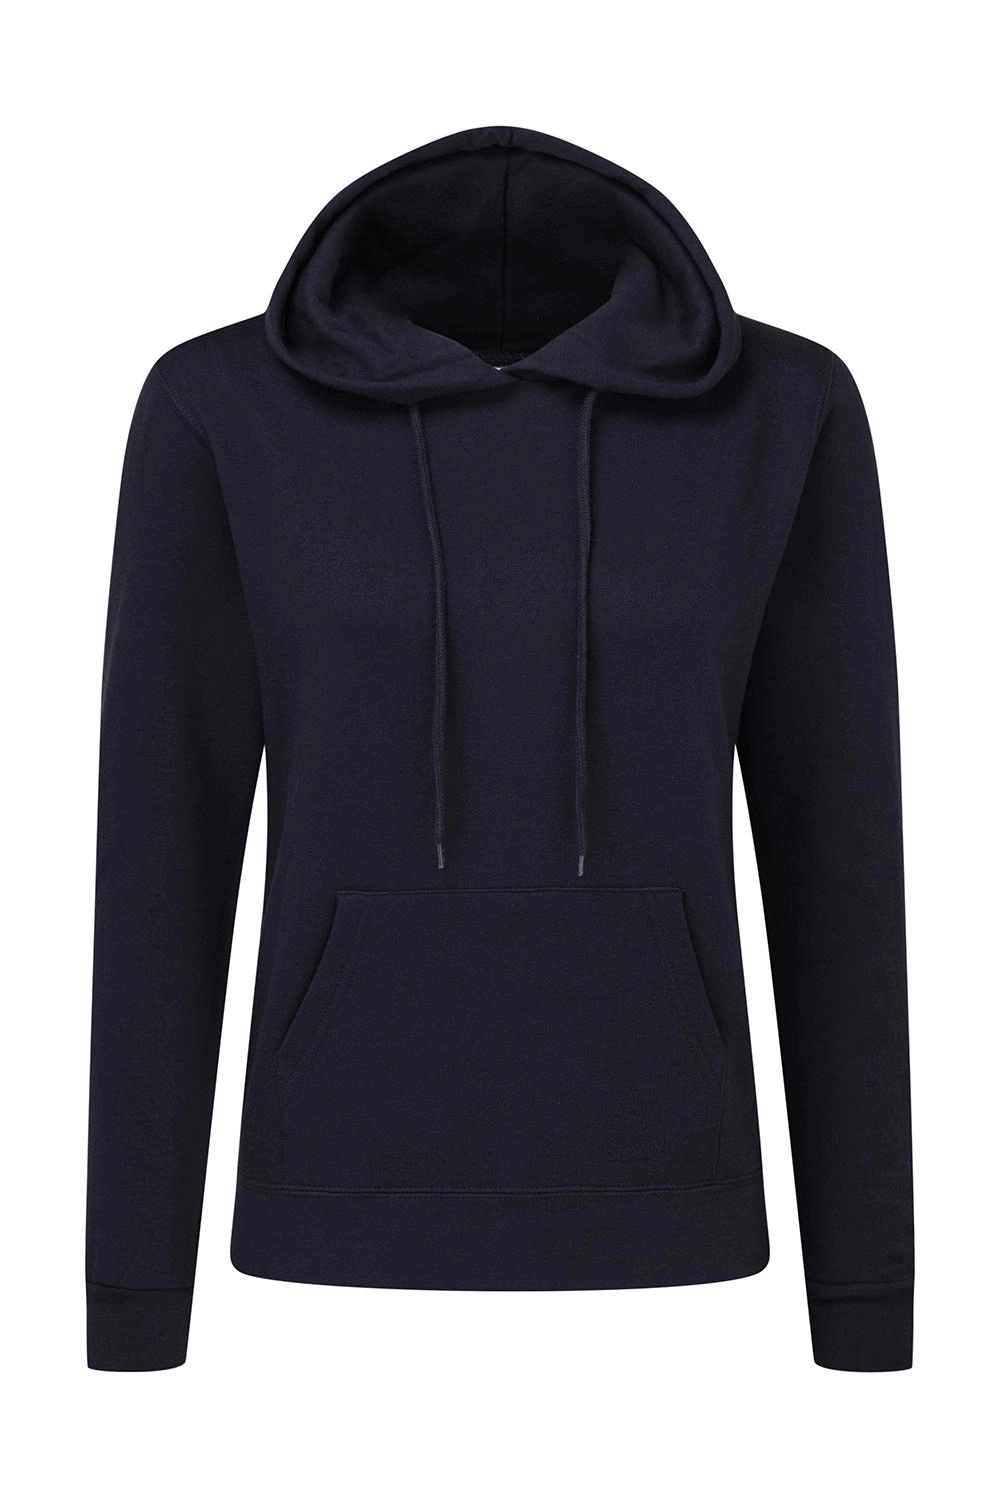 Hooded Sweatshirt Women zum Besticken und Bedrucken in der Farbe Navy mit Ihren Logo, Schriftzug oder Motiv.